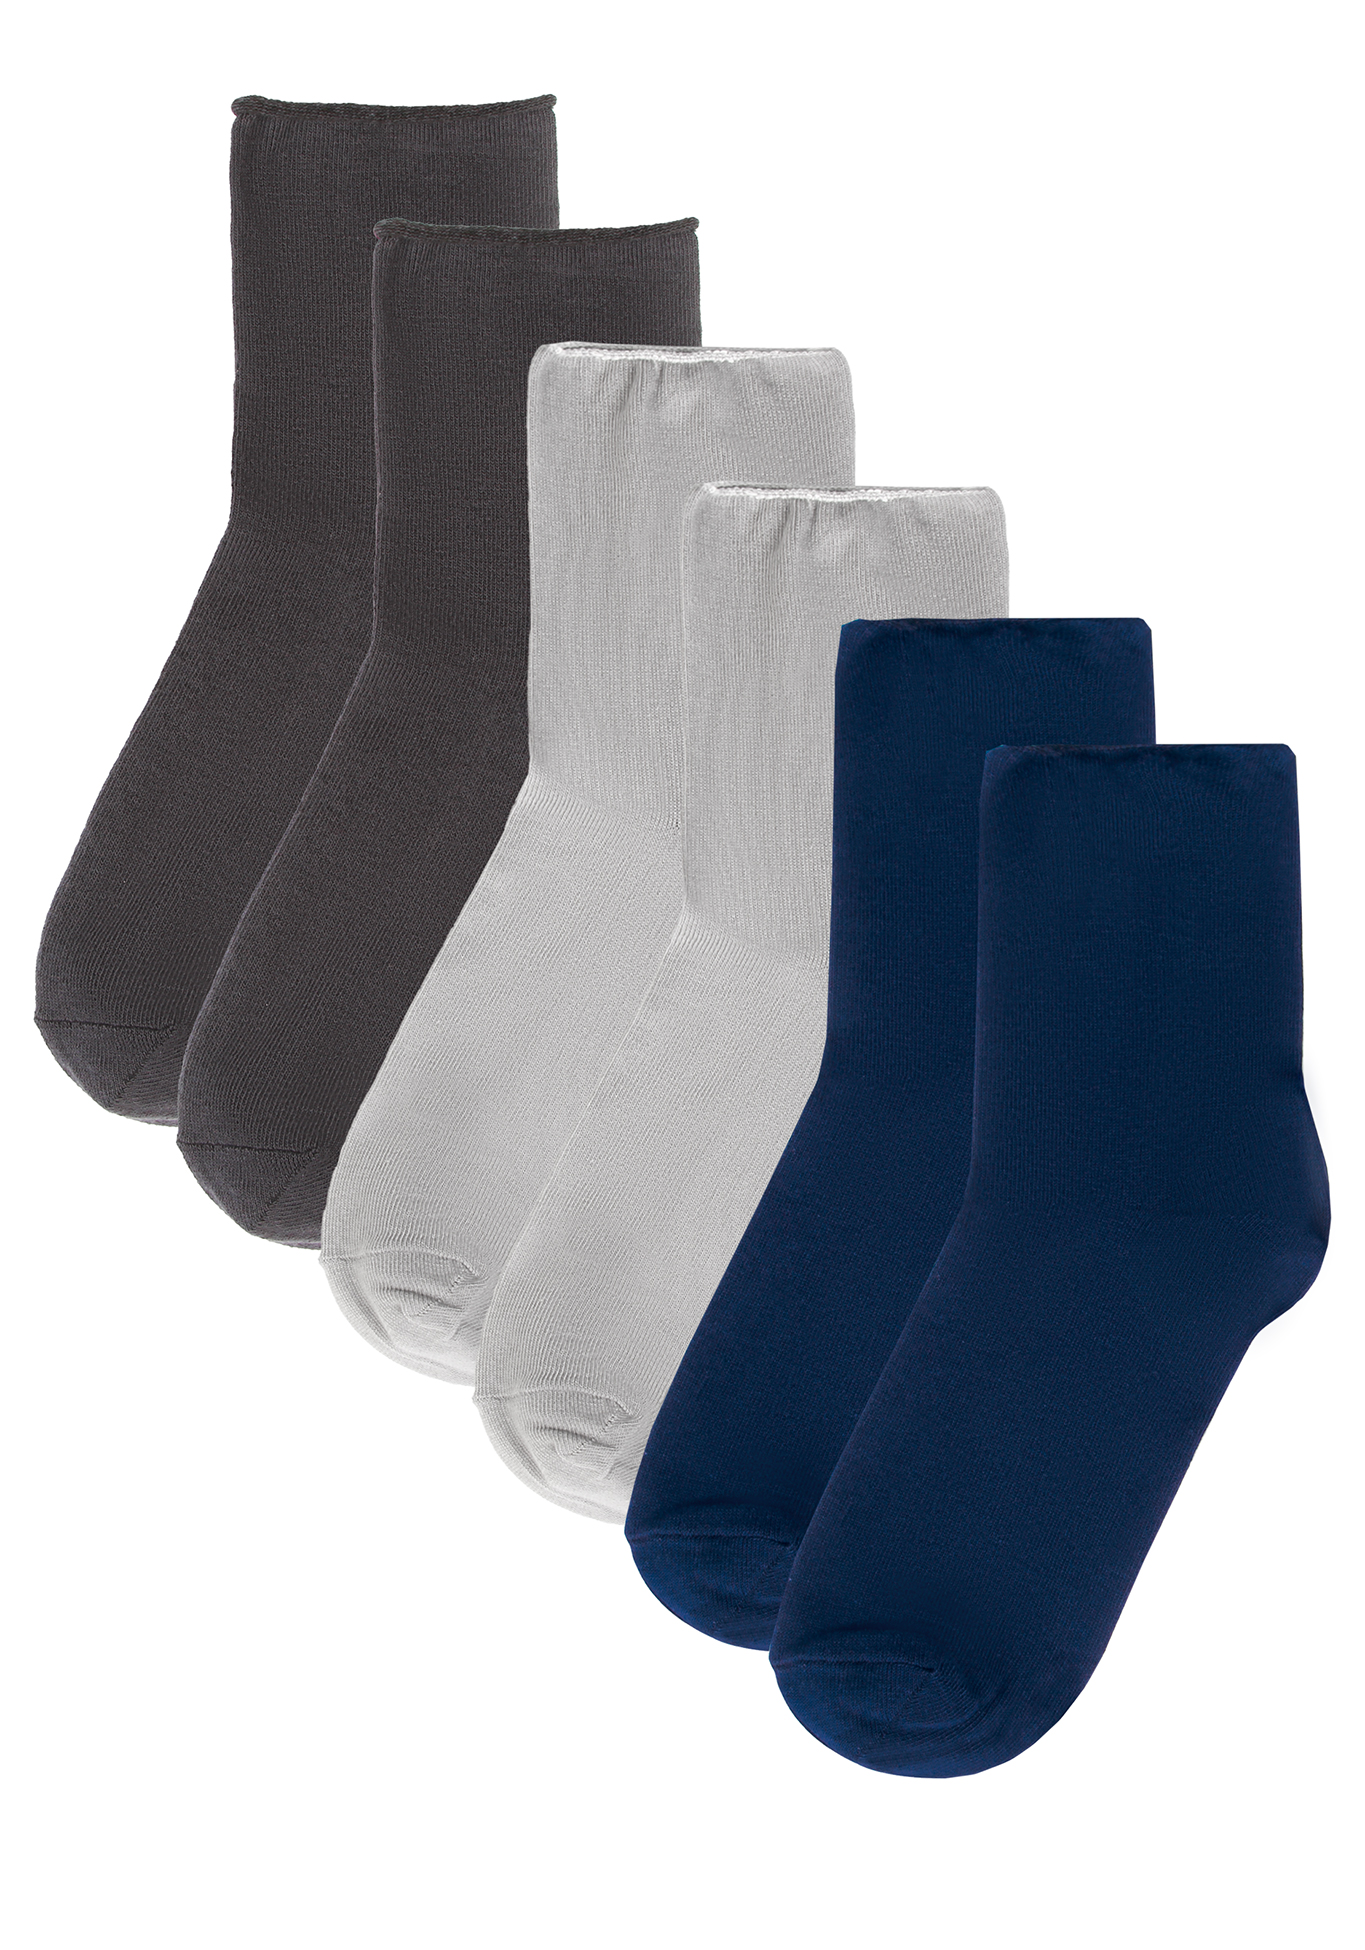 Специальные носки без резинки «Комфорт», цвет светло-серый+черный, размер 35-37 - фото 4